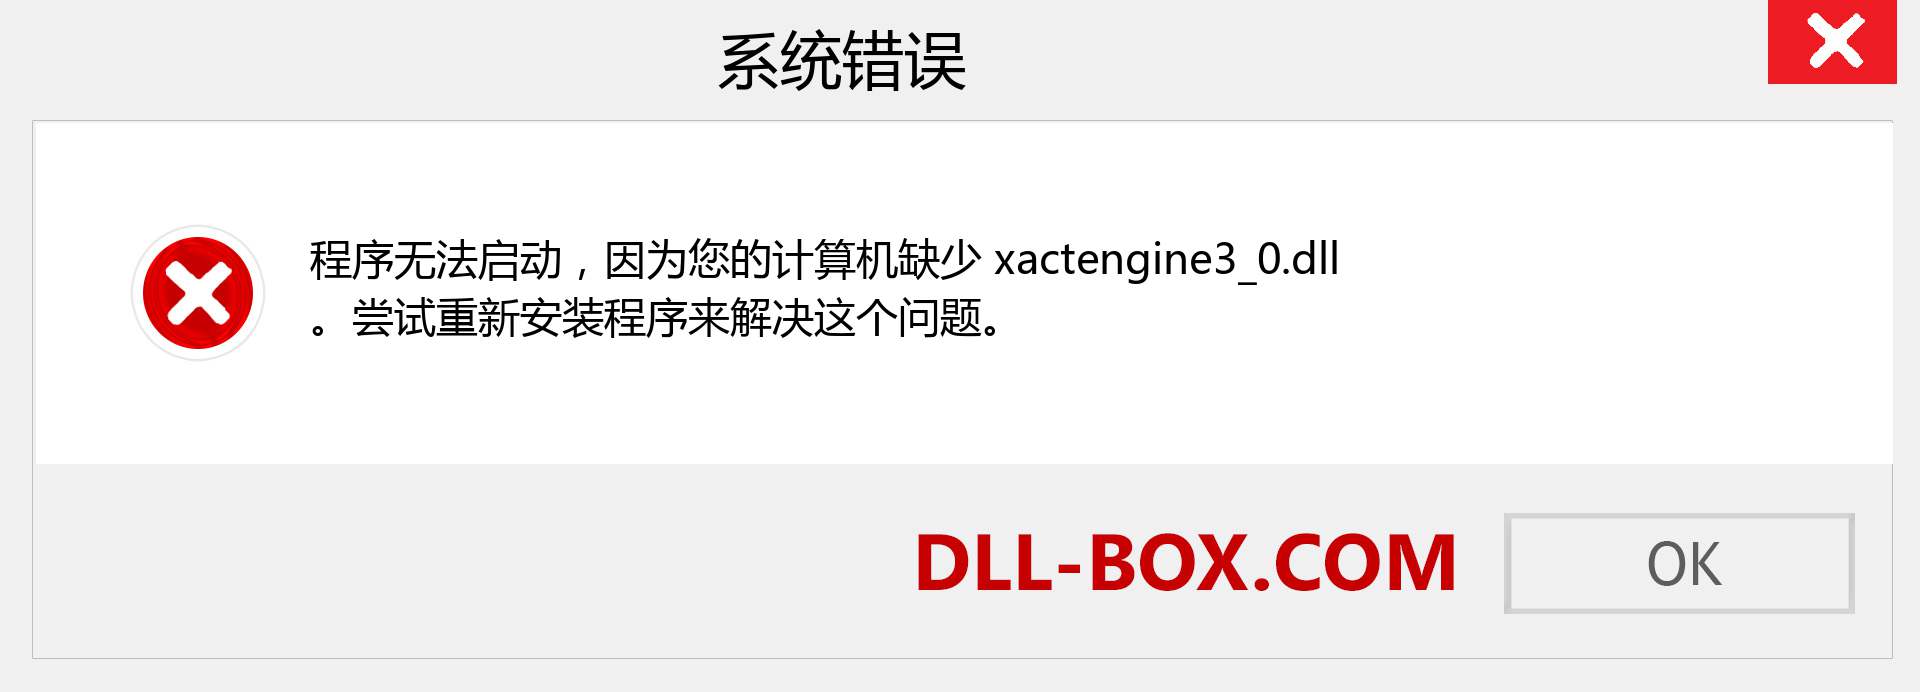 xactengine3_0.dll 文件丢失？。 适用于 Windows 7、8、10 的下载 - 修复 Windows、照片、图像上的 xactengine3_0 dll 丢失错误